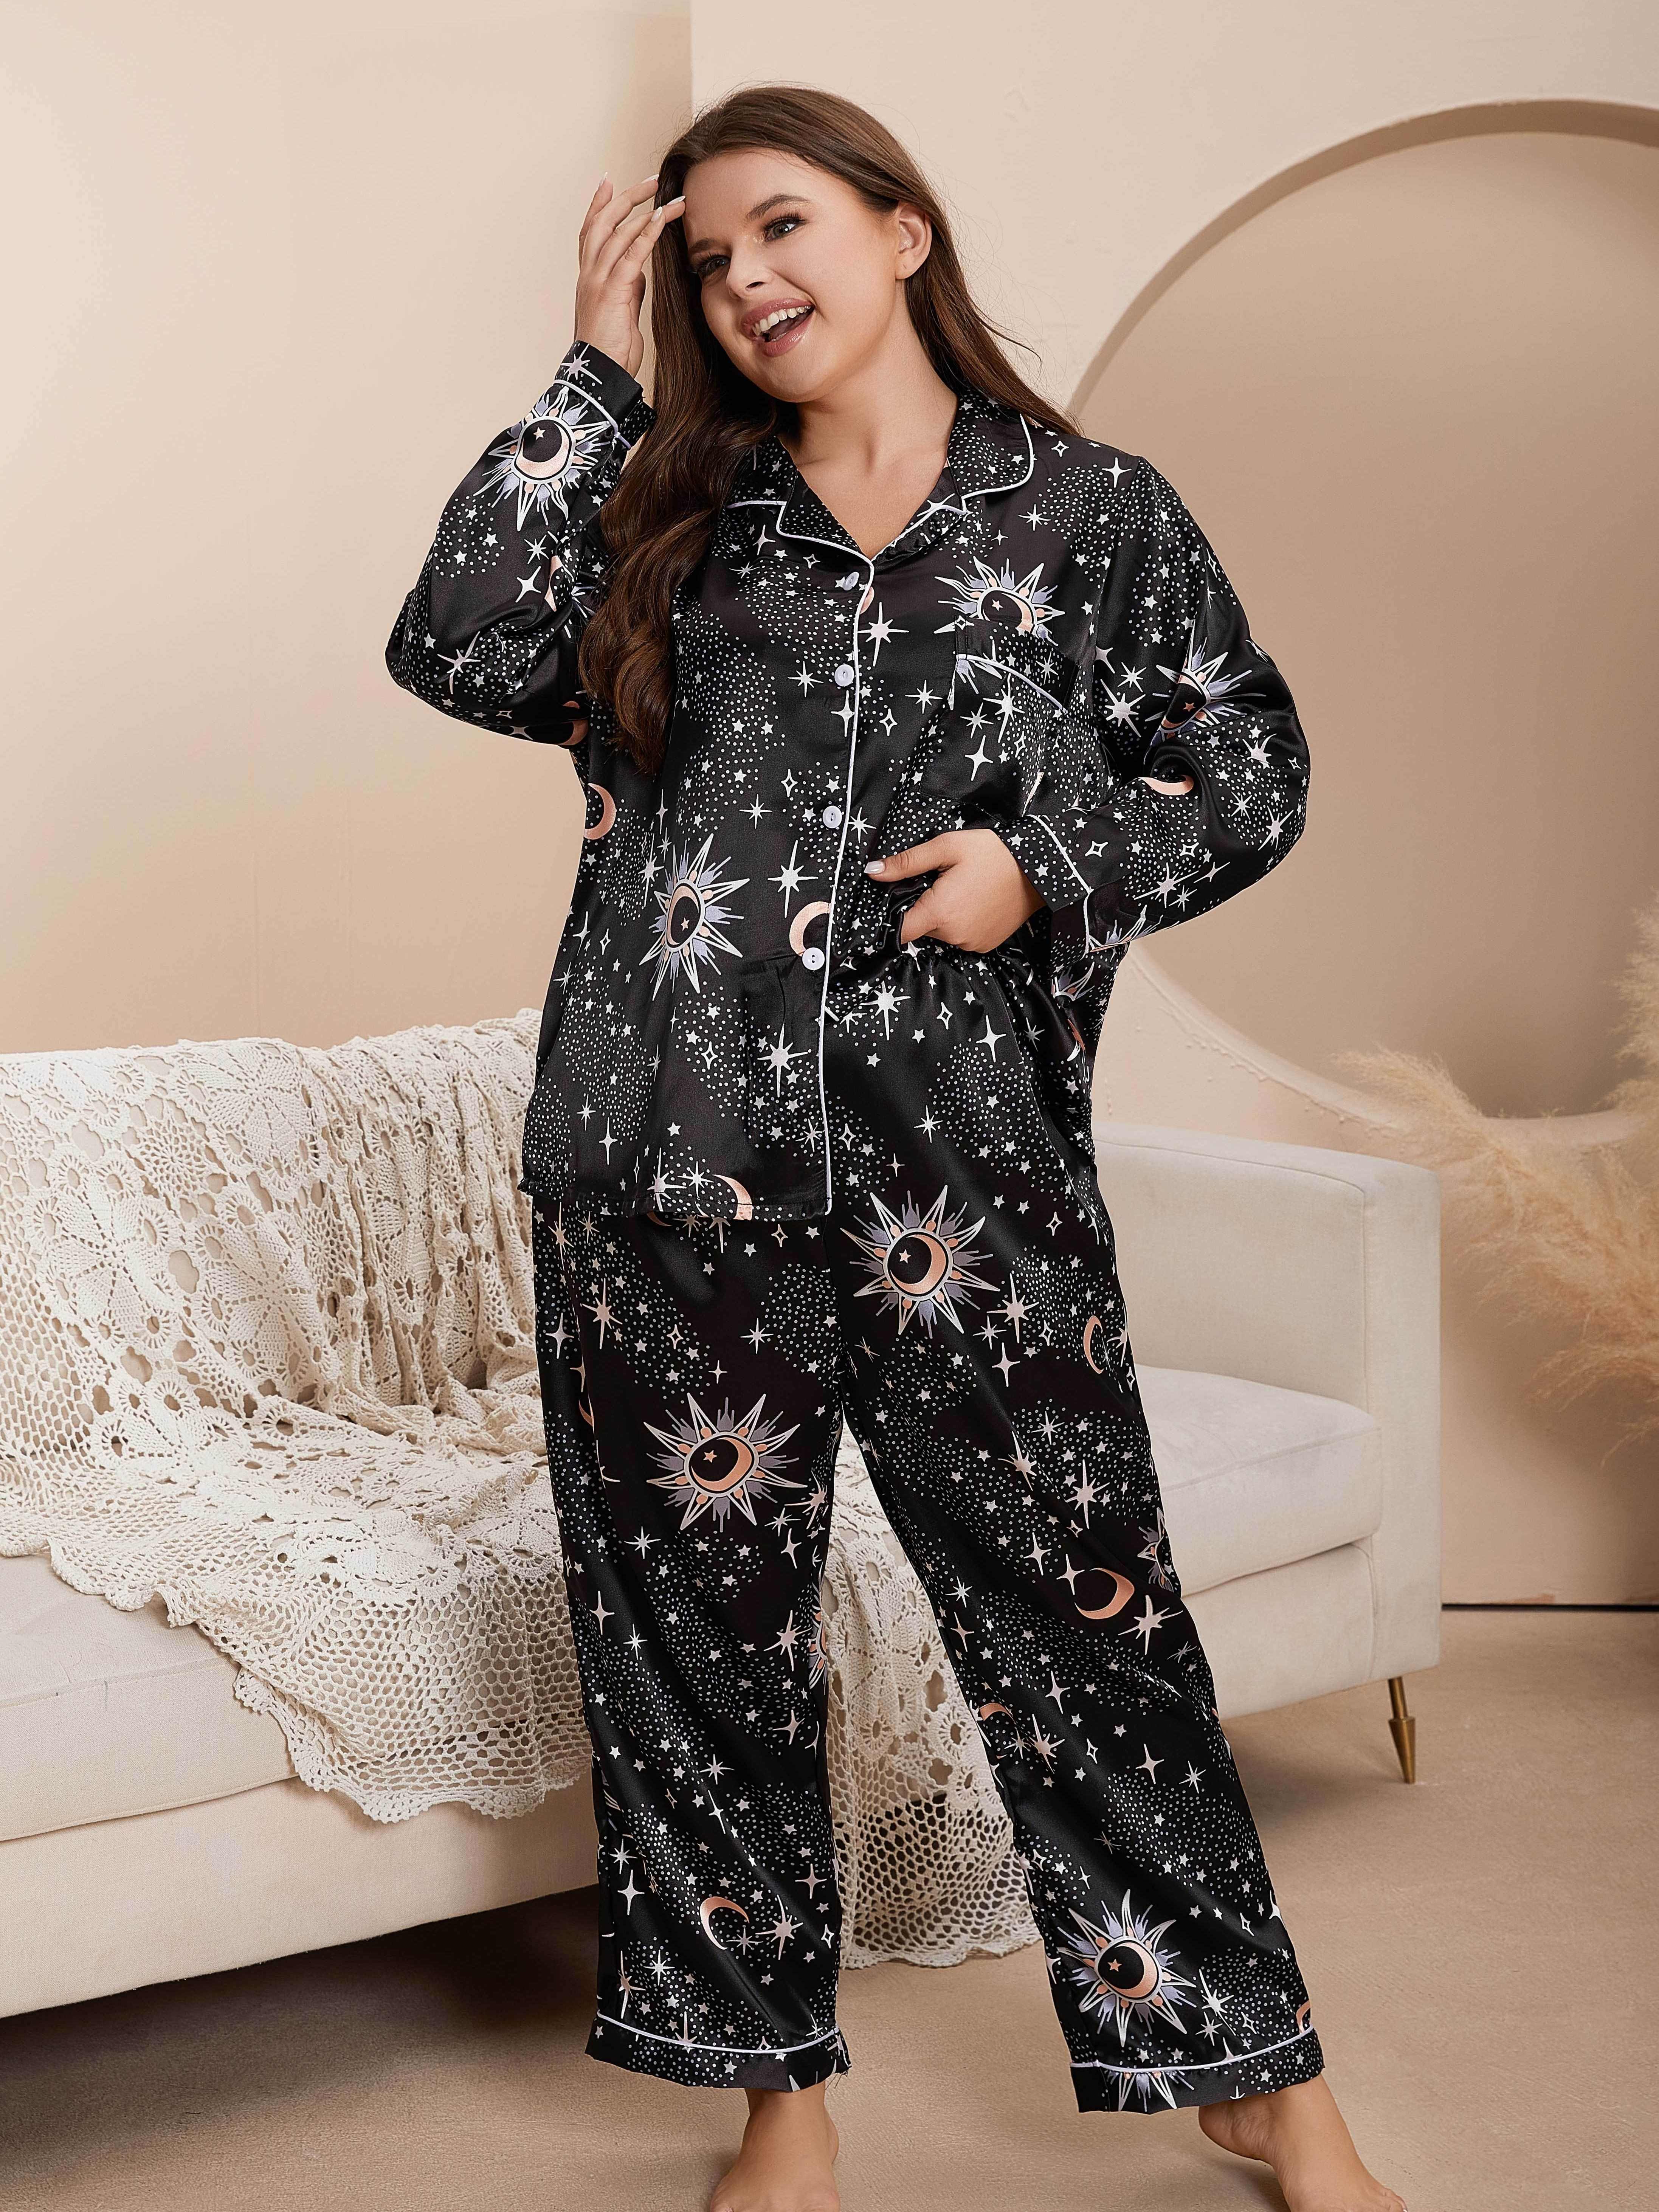 Stars Printed Black Silk Pajamas For Women